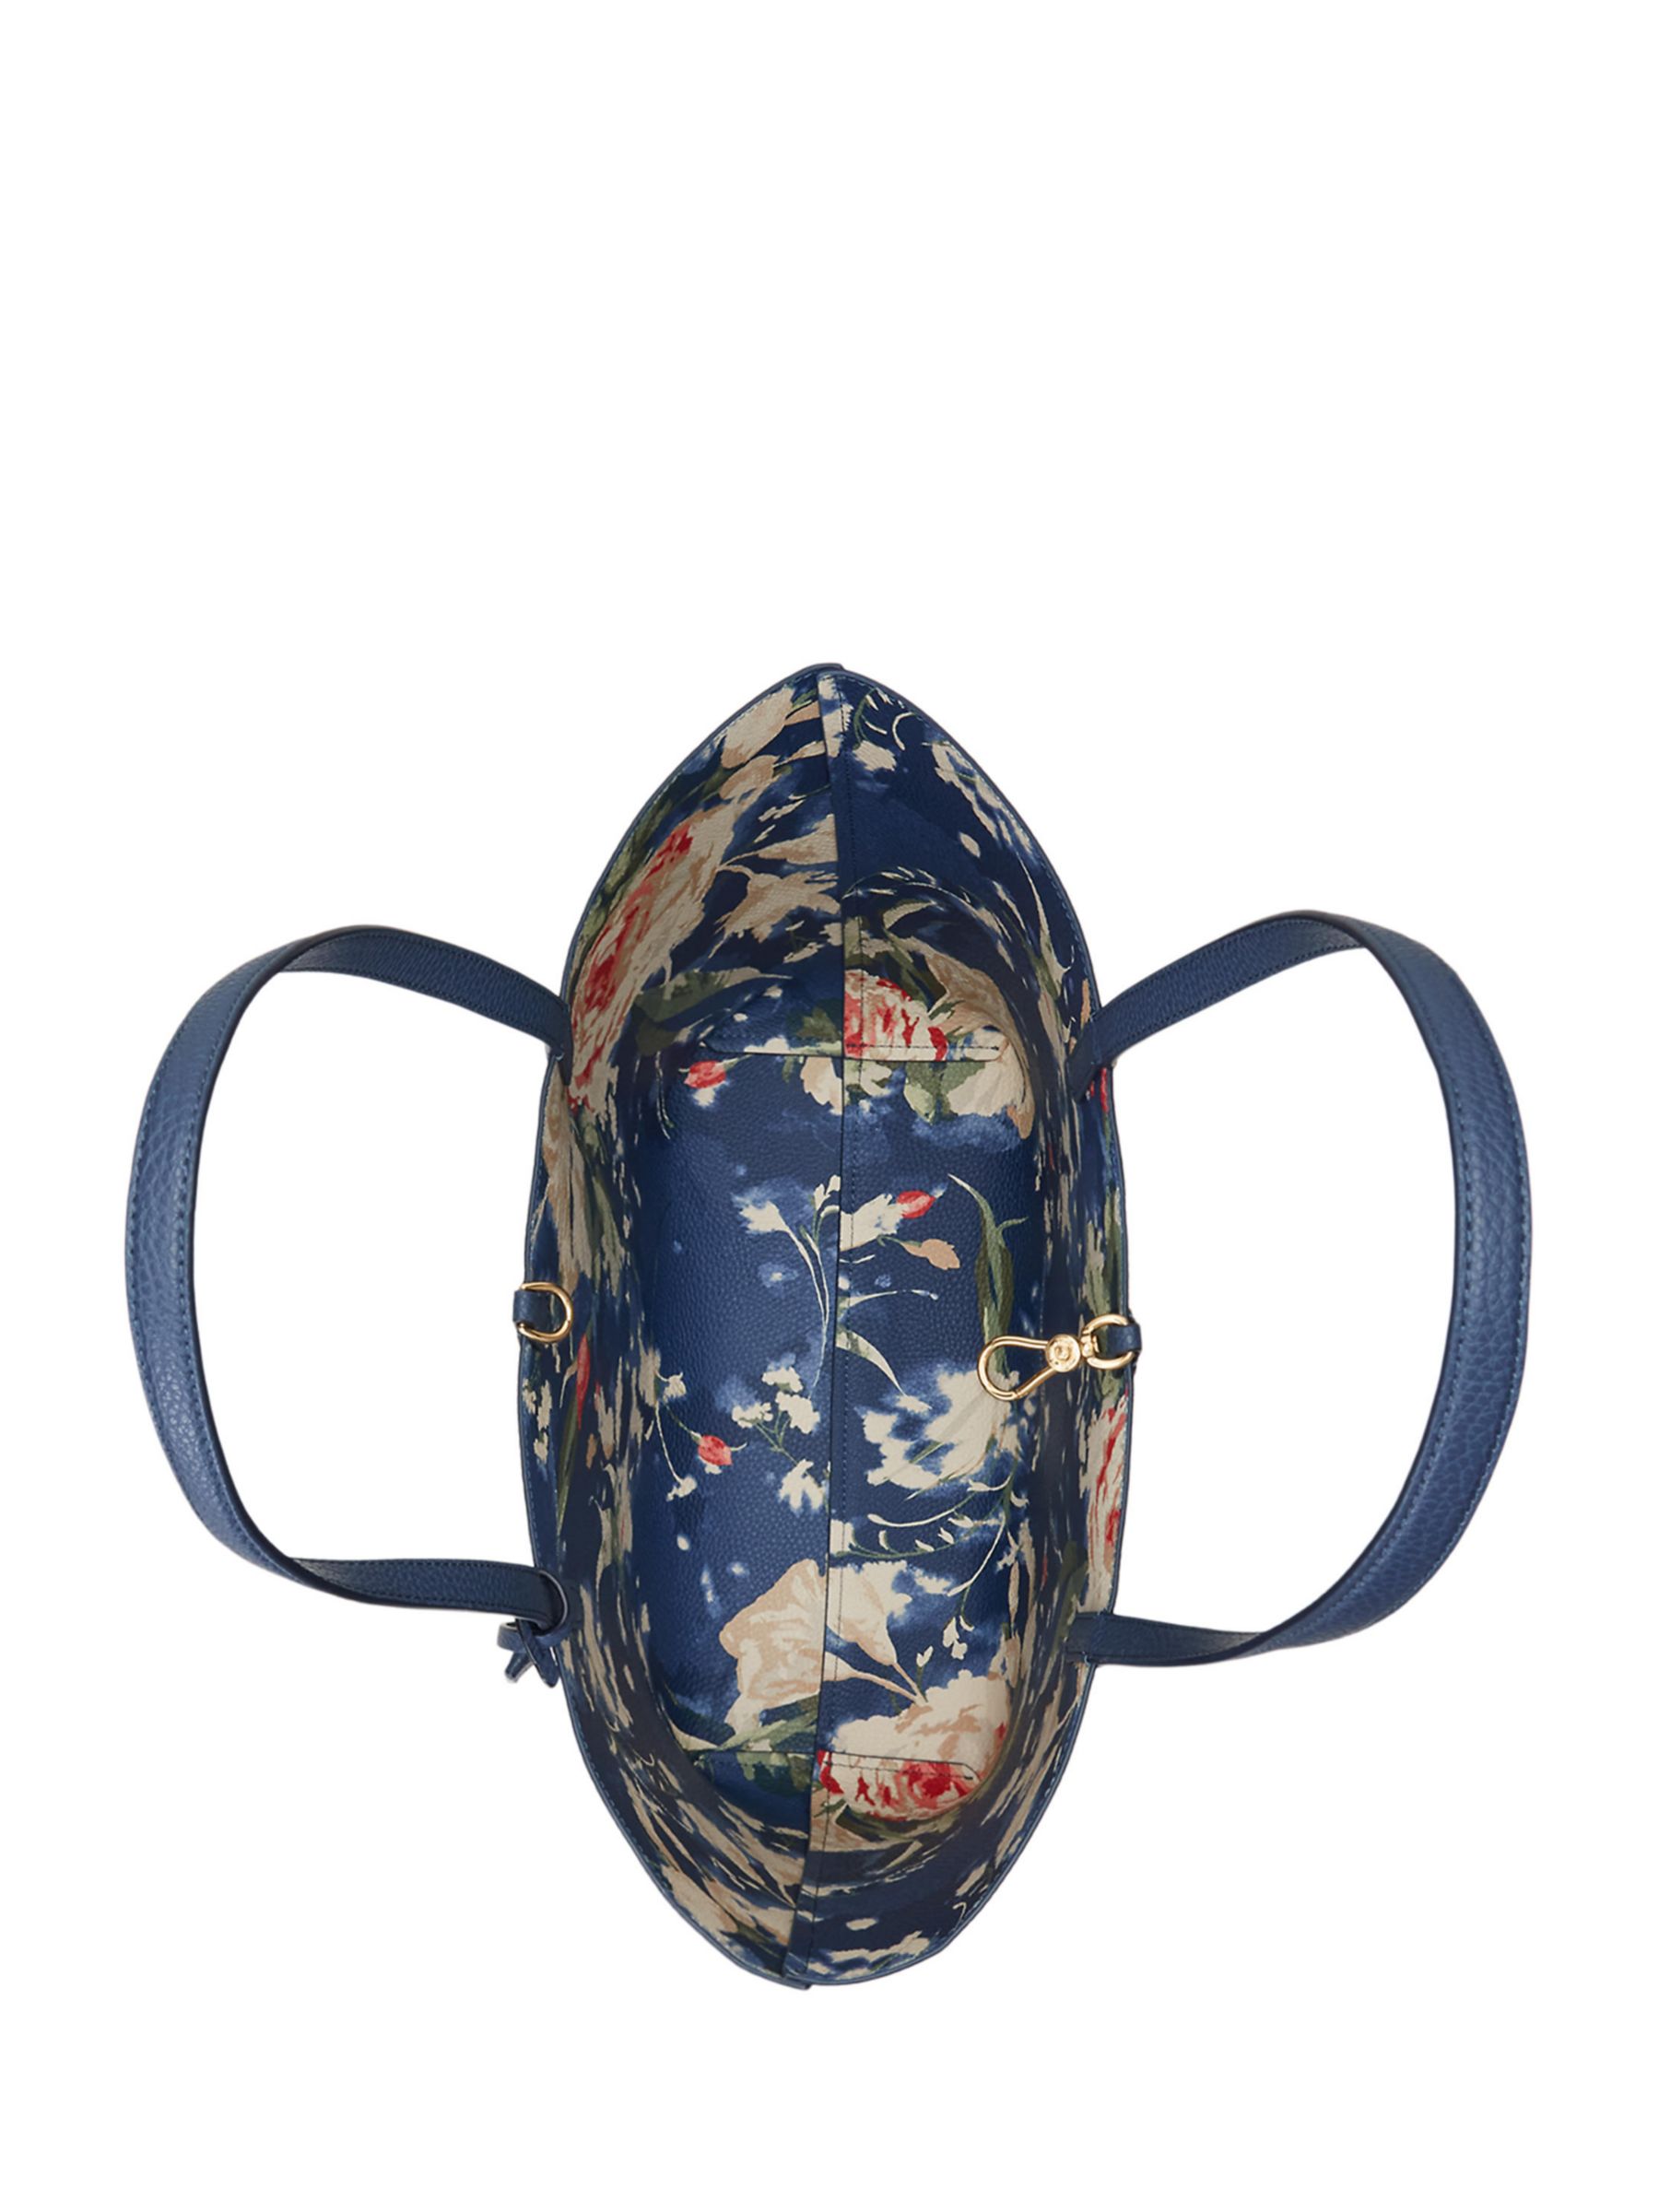 Buy Lauren Ralph Lauren Indigo Blooms Reversible Tote Bag, Indigo Dusk/Antibes Online at johnlewis.com